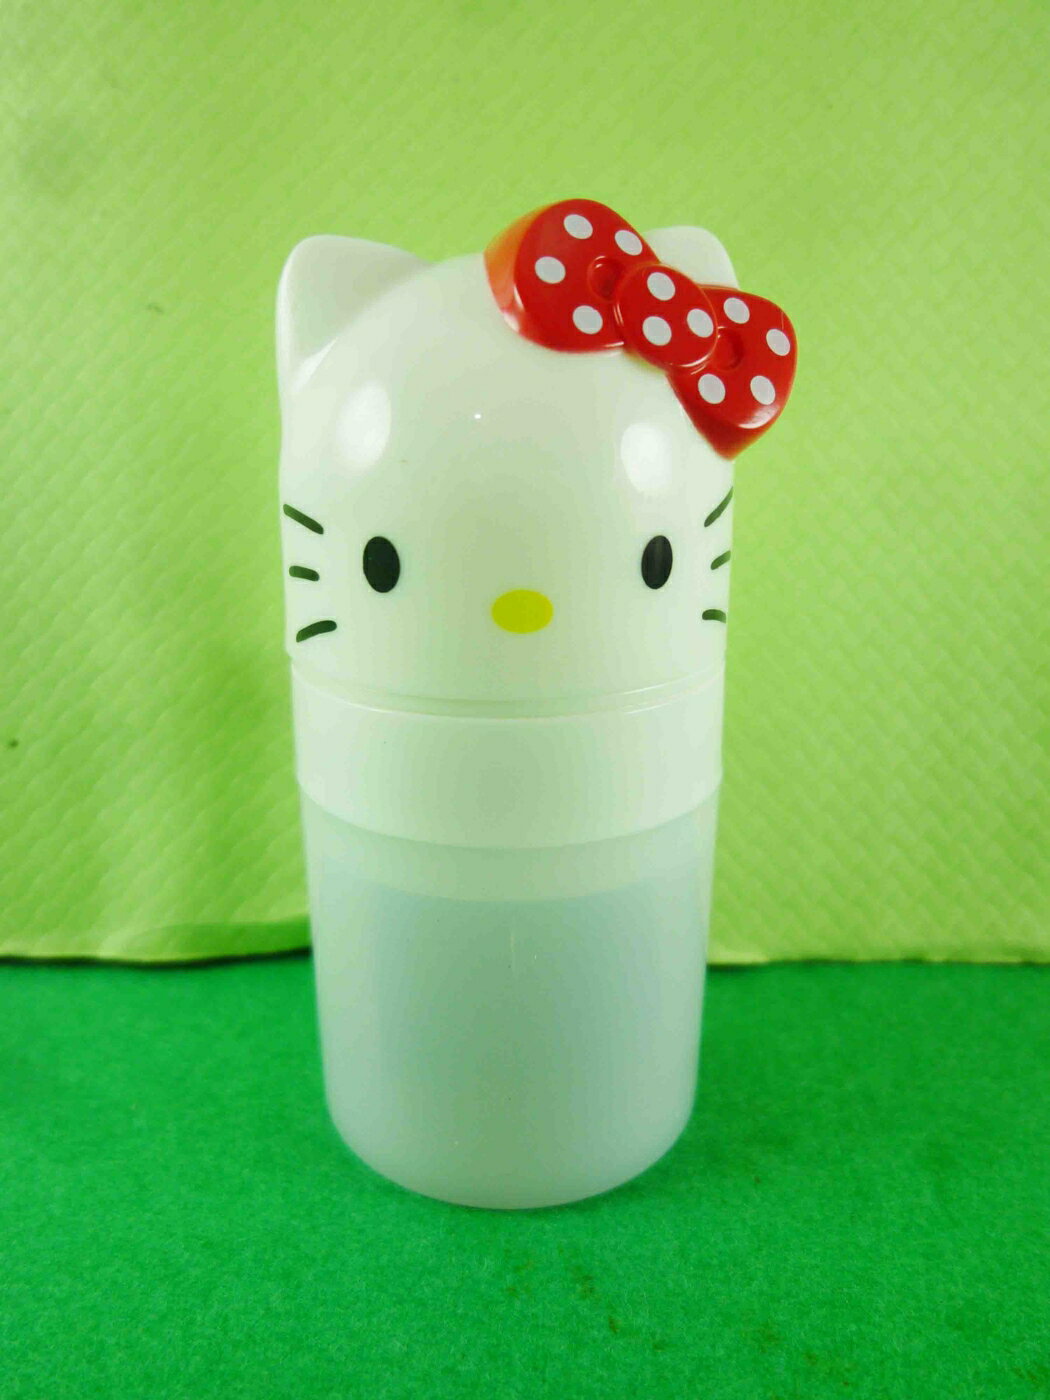 【震撼精品百貨】Hello Kitty 凱蒂貓 2用印章-白色外殼 震撼日式精品百貨